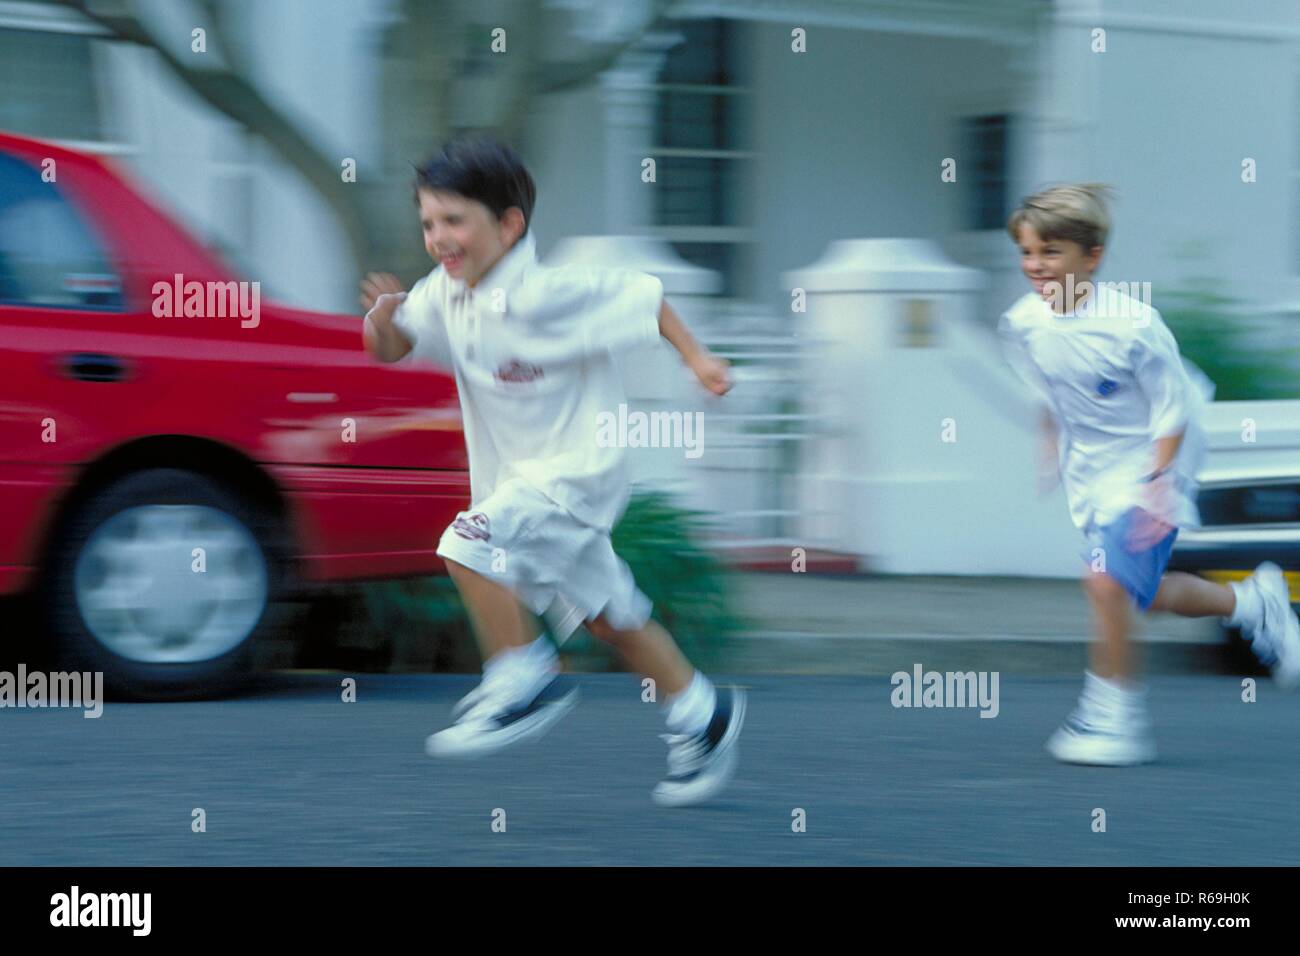 Ritratto, Ganzfigur, zwei 7-8 Jahre alte Jungen bekleidet mit weissen T-Shirts und Shorts laufen un einem roten Auto vorbei die Strasse entlang Foto Stock